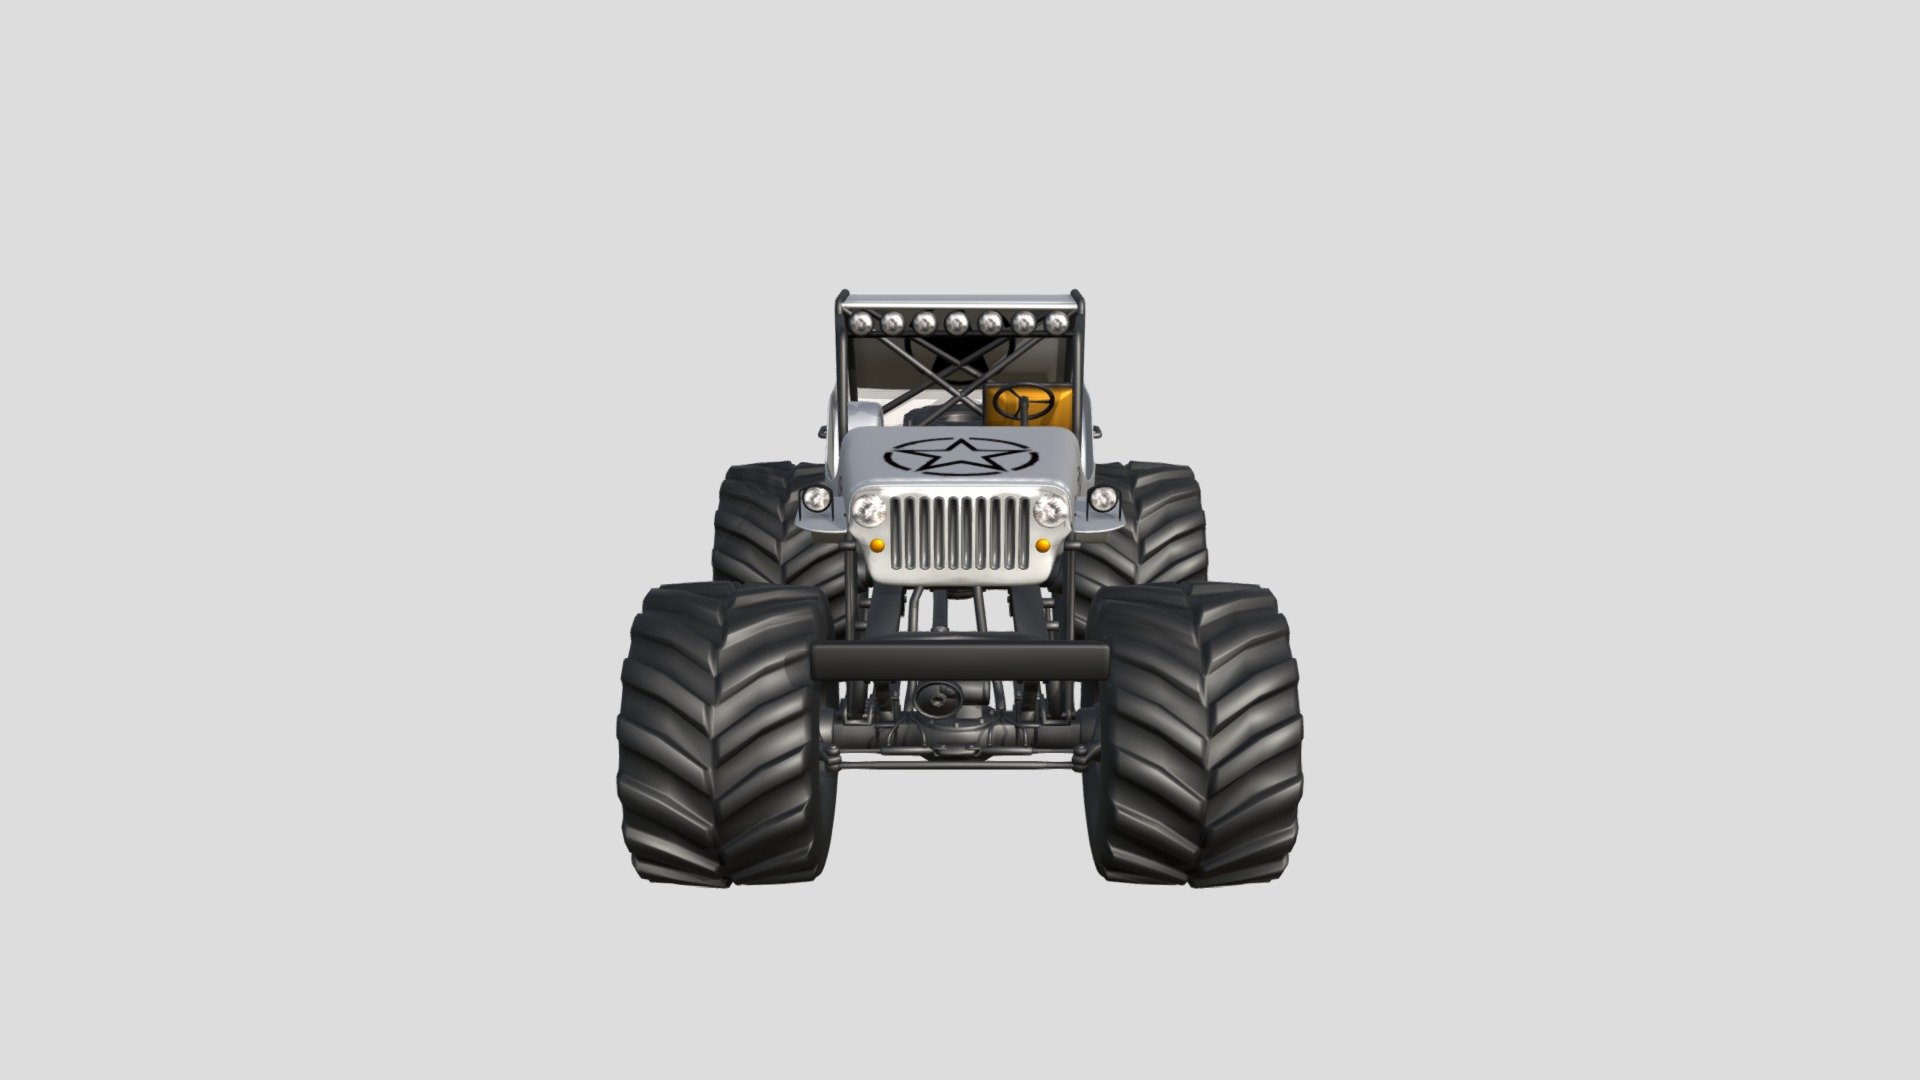 Jeep Monster Truck 3d Model

If you like My model

Please follow my Instagram page:

Please Review My model in comment section - Jeep Monster Truck 3d Model - Download Free 3D model by munish kumar singla (@munishkumarsingla) 3d model